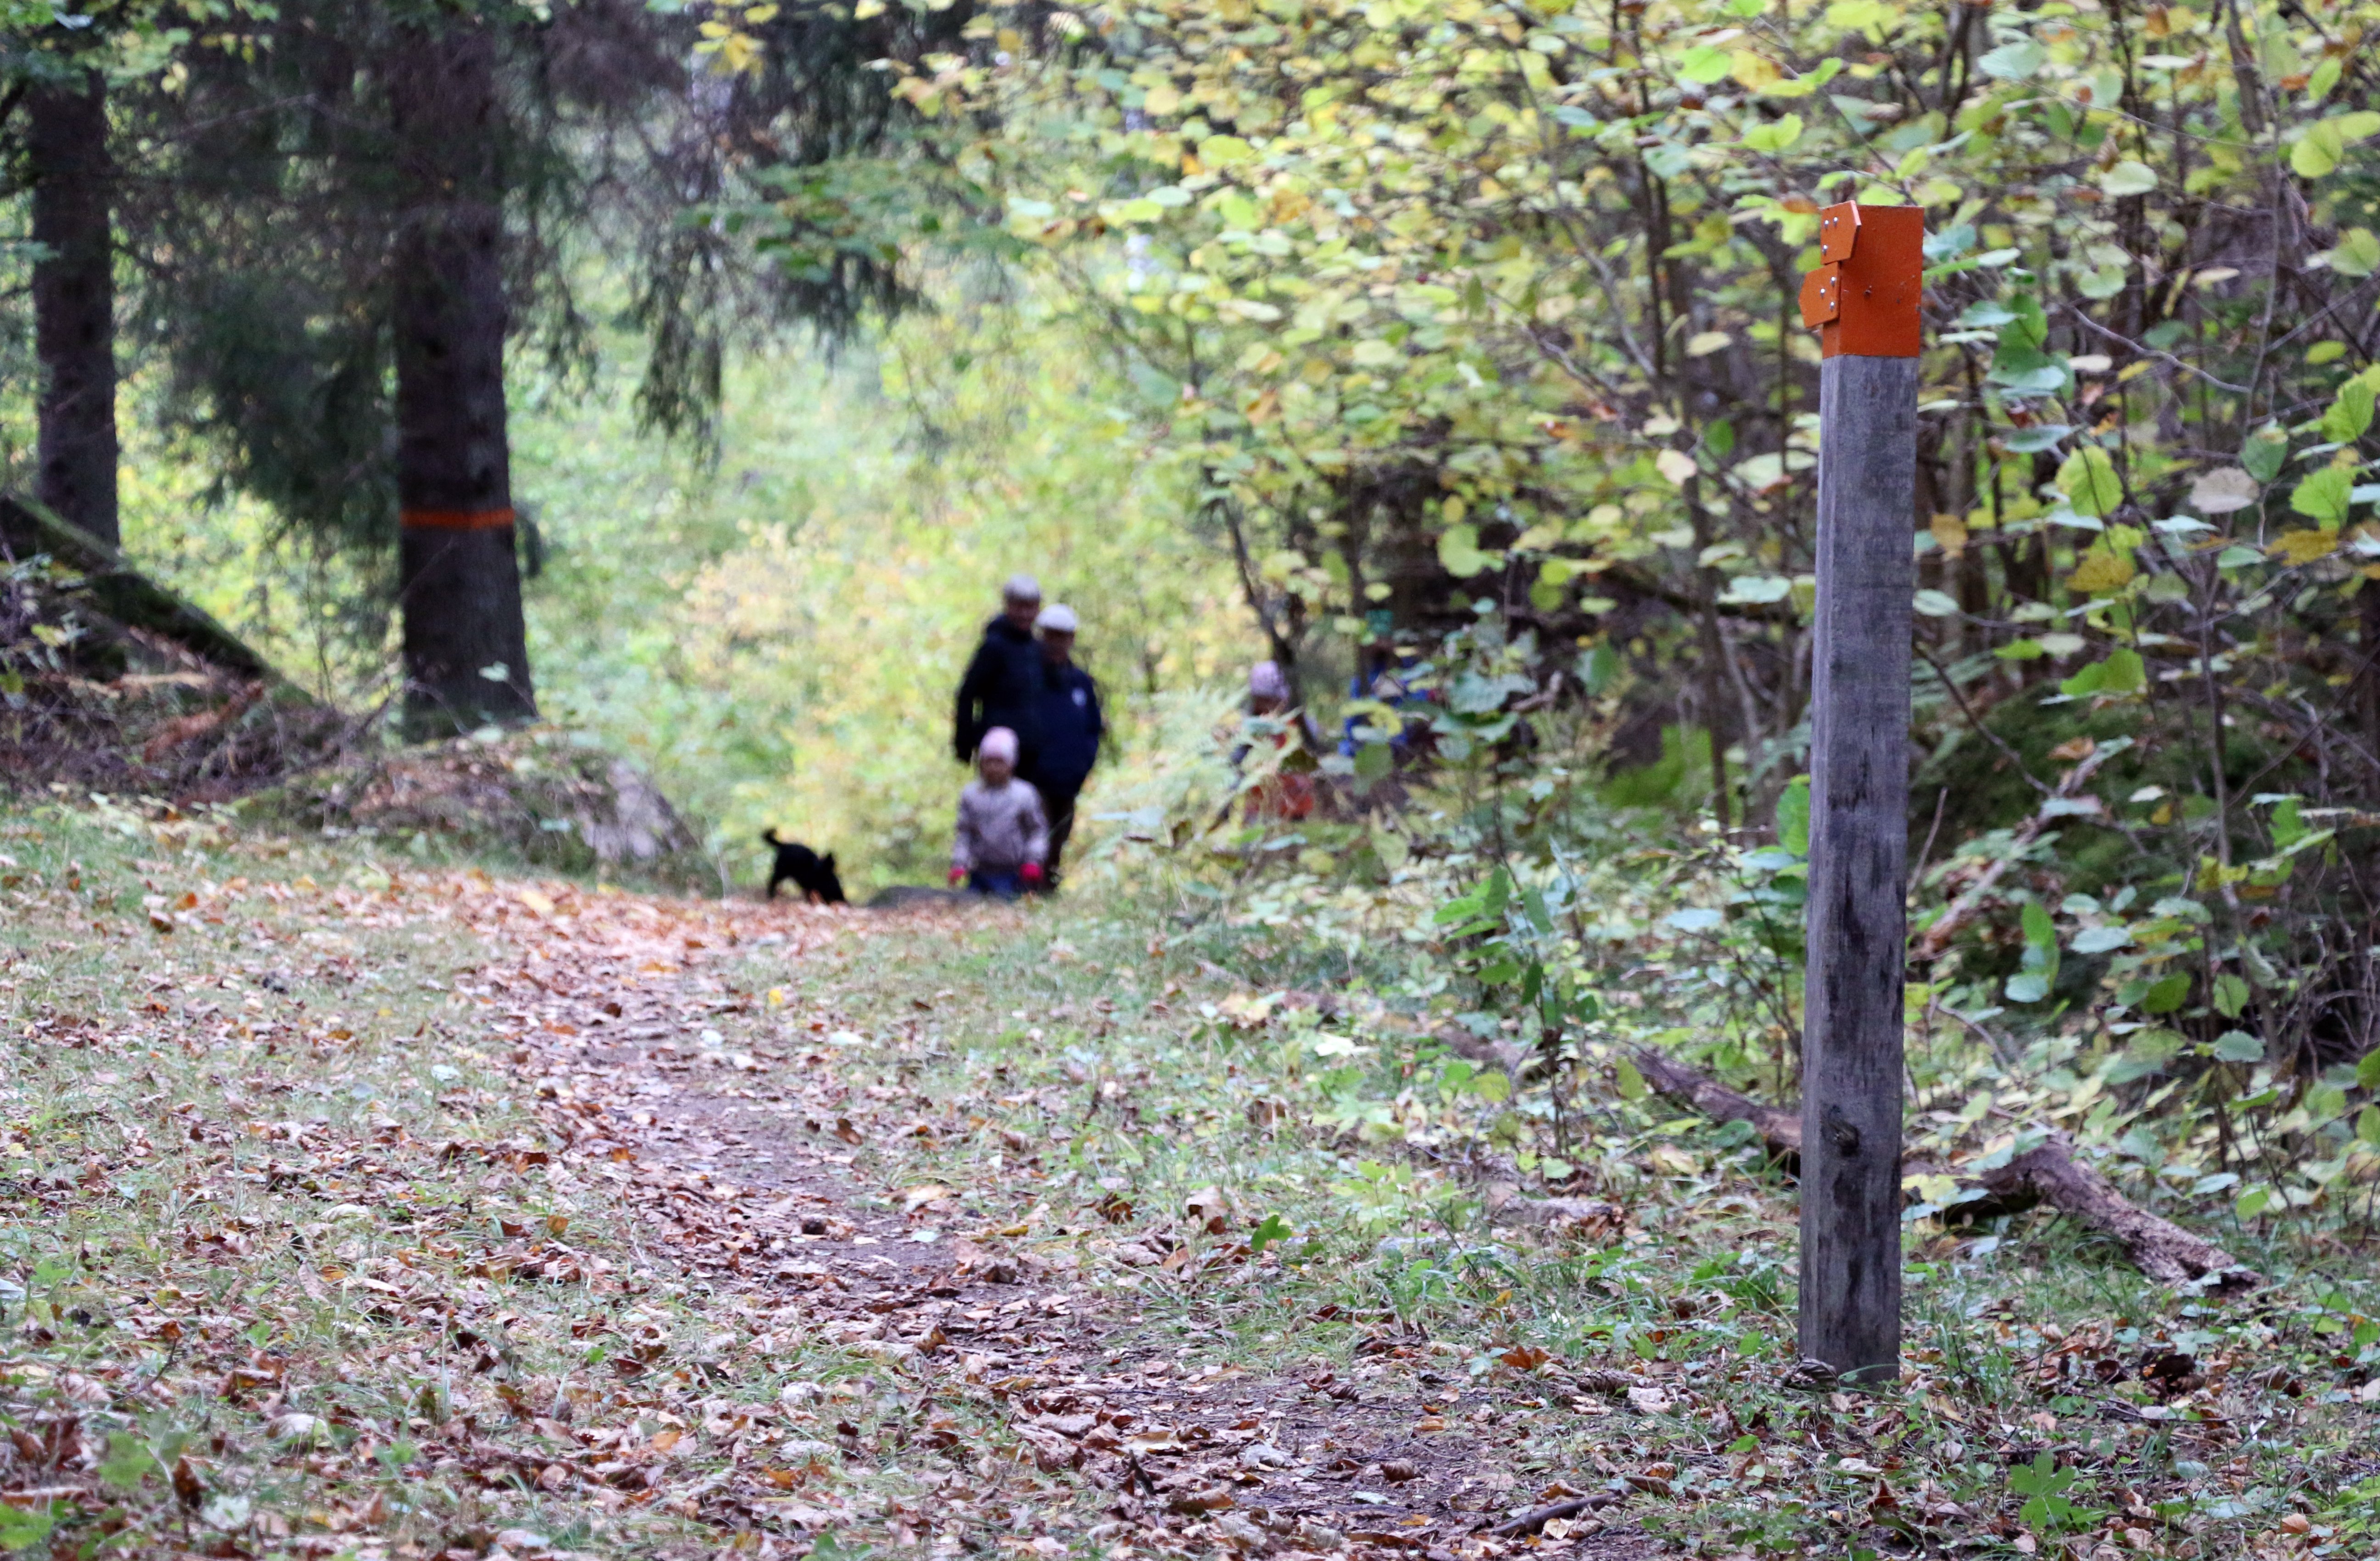 En stolpe med orange pilar som visar vägen. På stigen syns några personer gå med en hund.